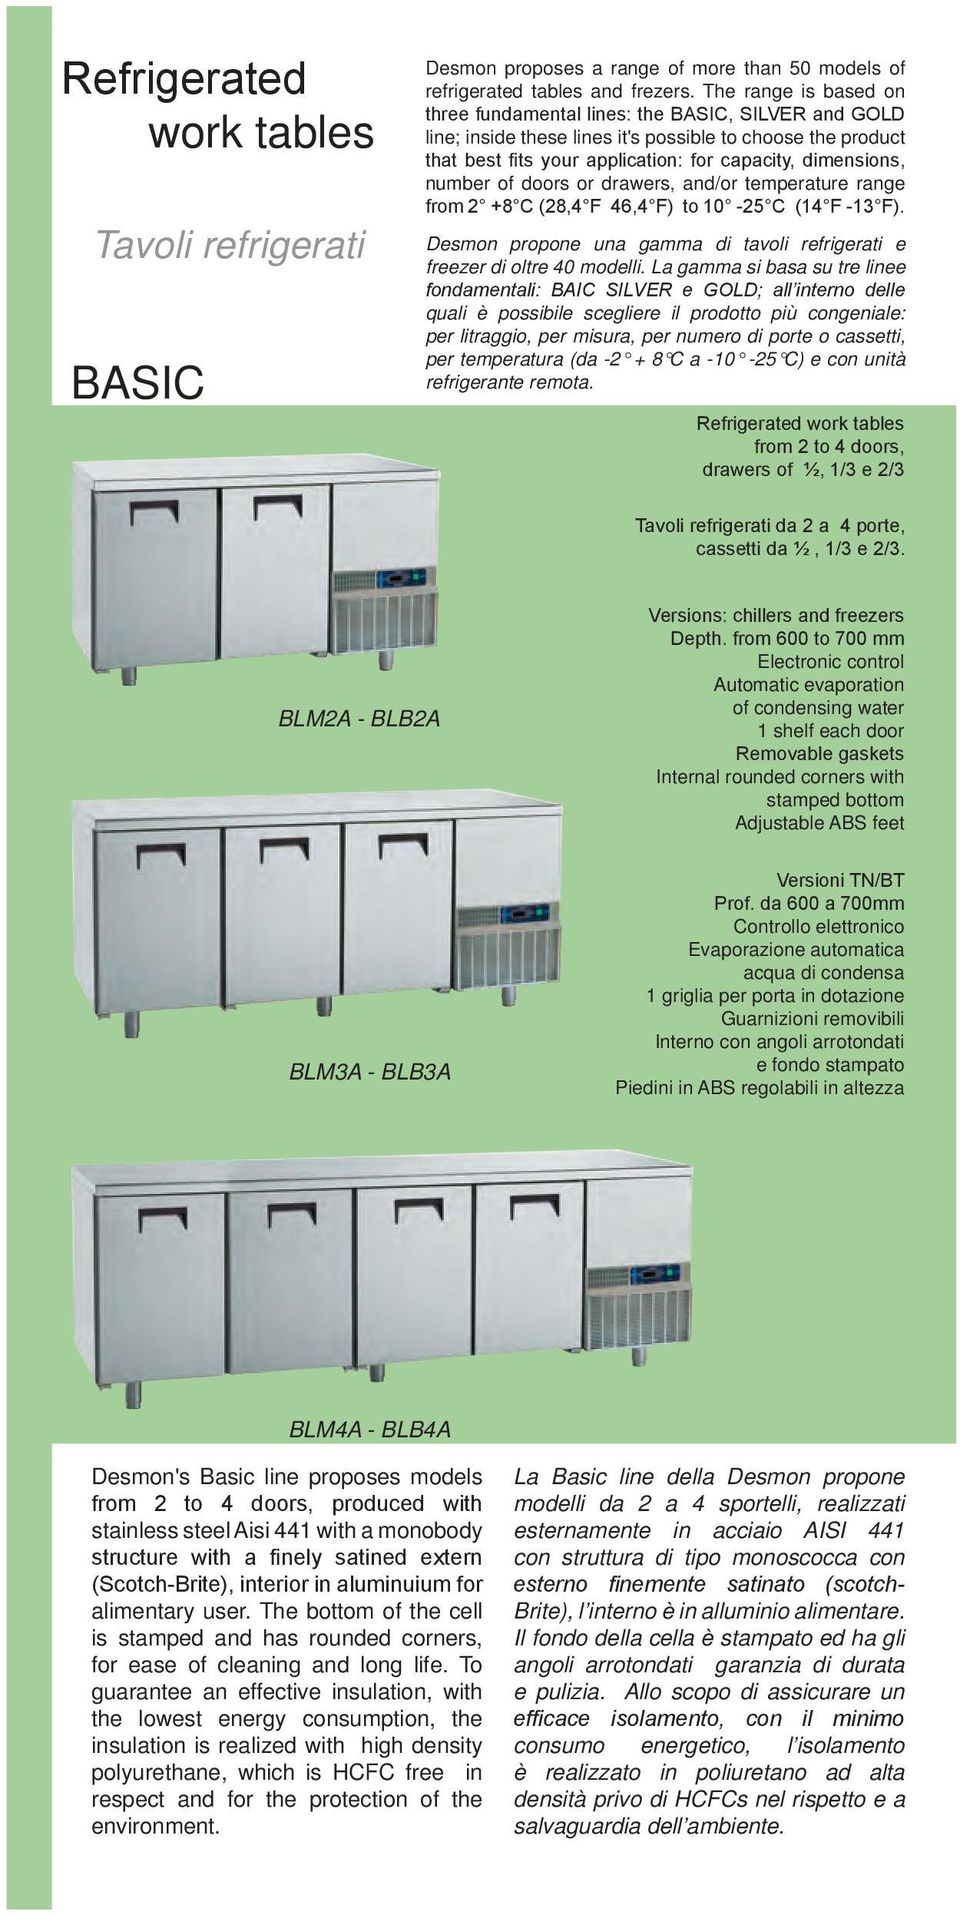 number of doors or drawers, and/or temperature range from 2 +8 C (28,4 F 46,4 F) to 10-25 C (14 F -13 F). Desmon propone una gamma di tavoli refrigerati e freezer di oltre 40 modelli.